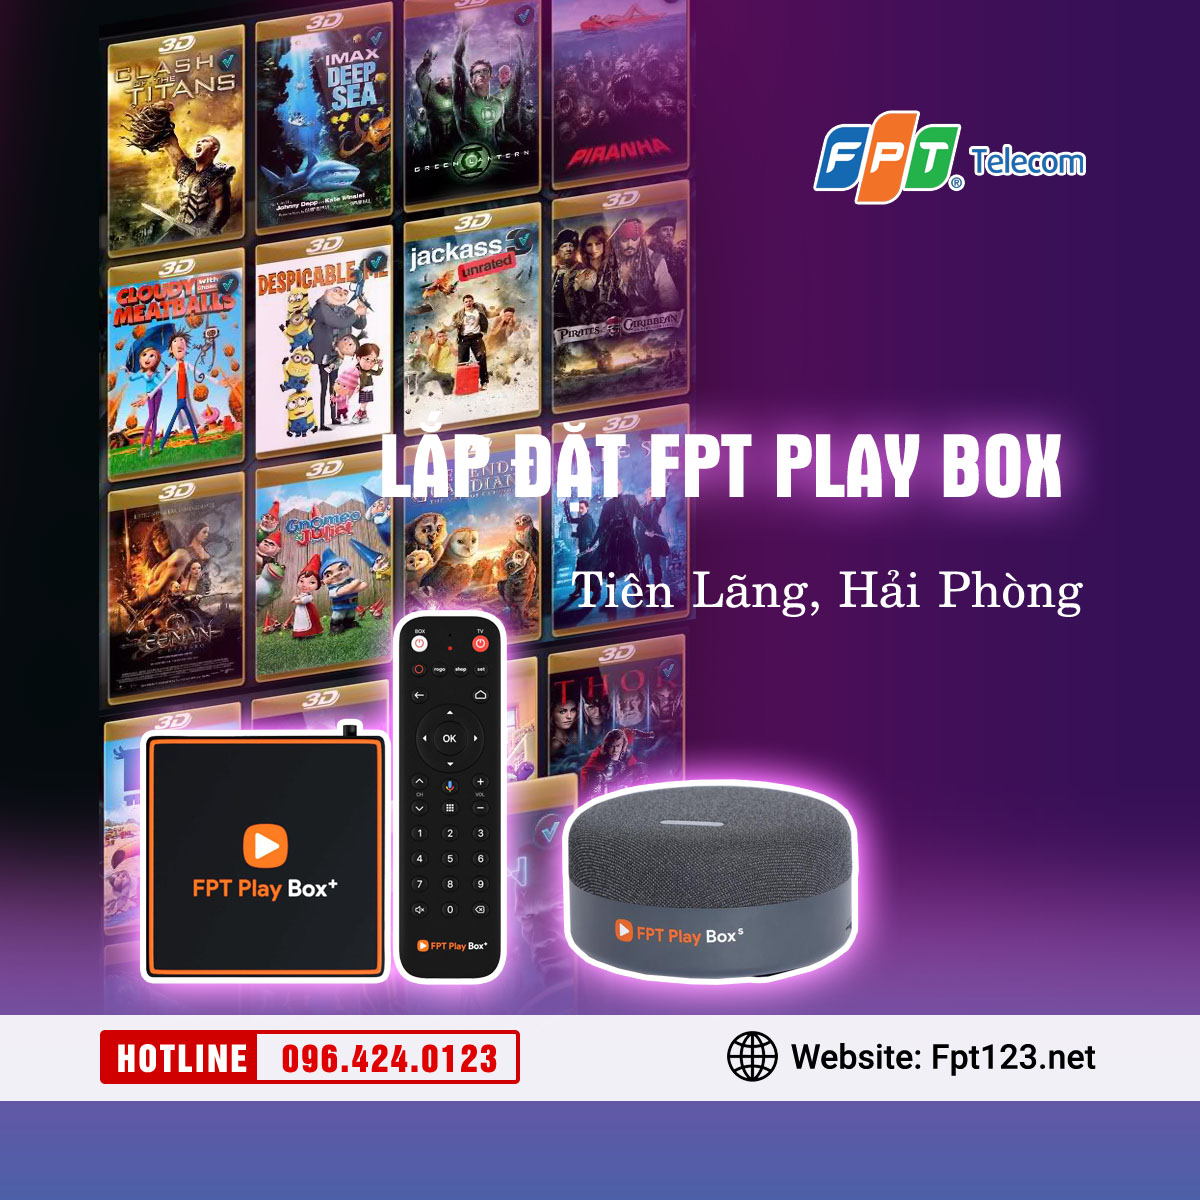 Lắp đặt FPT Play Box ở huyện Tiên Lãng, Hải Phòng